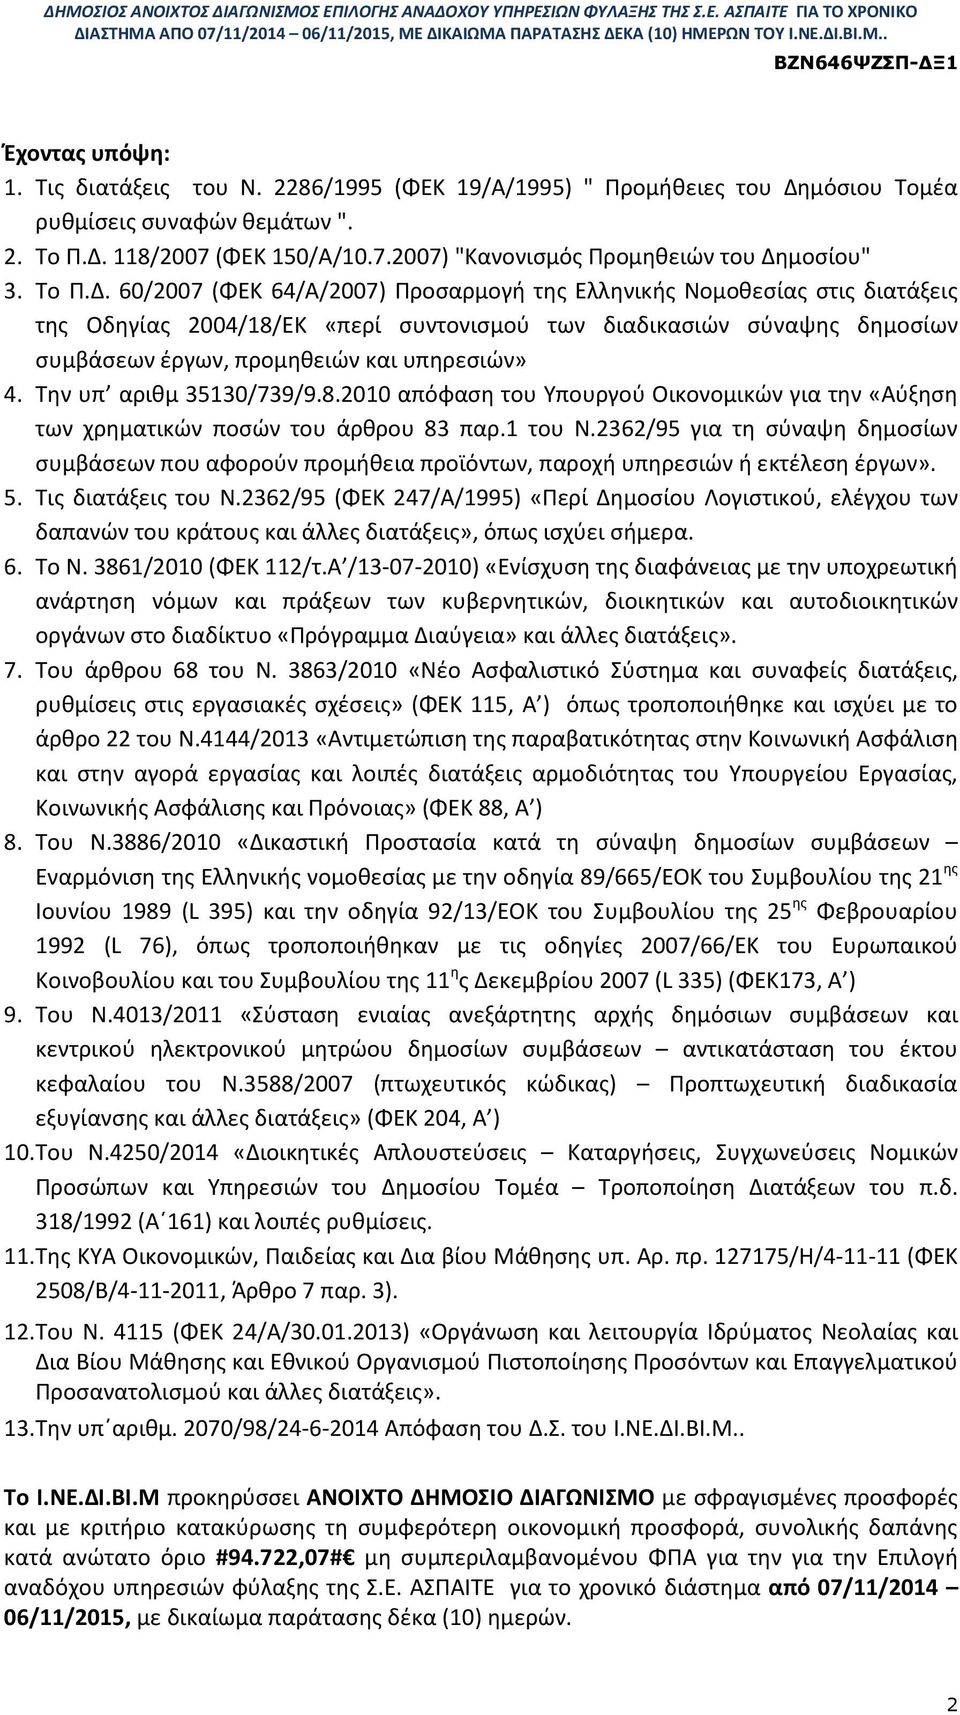 60/2007 (ΦΕΚ 64/Α/2007) Προσαρμογή της Ελληνικής Νομοθεσίας στις διατάξεις της Οδηγίας 2004/18/ΕΚ «περί συντονισμού των διαδικασιών σύναψης δημοσίων συμβάσεων έργων, προμηθειών και υπηρεσιών» 4.